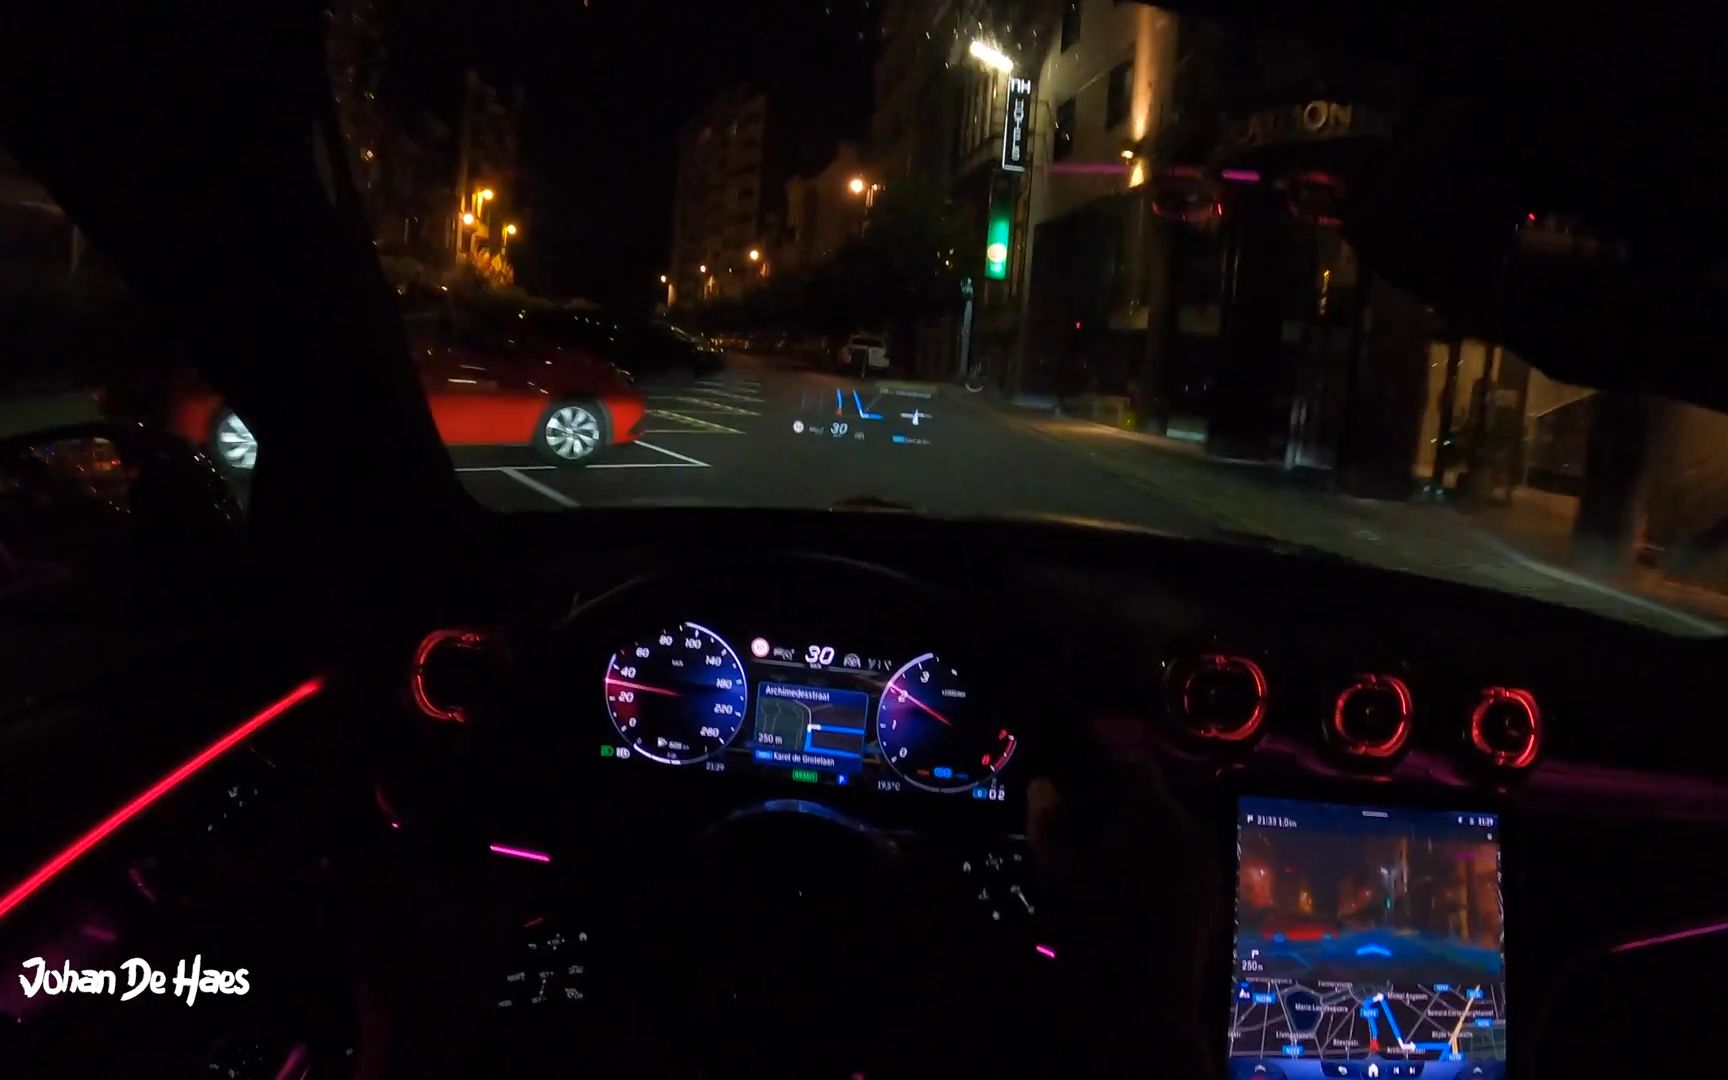 车里拍的夜景图片开车图片